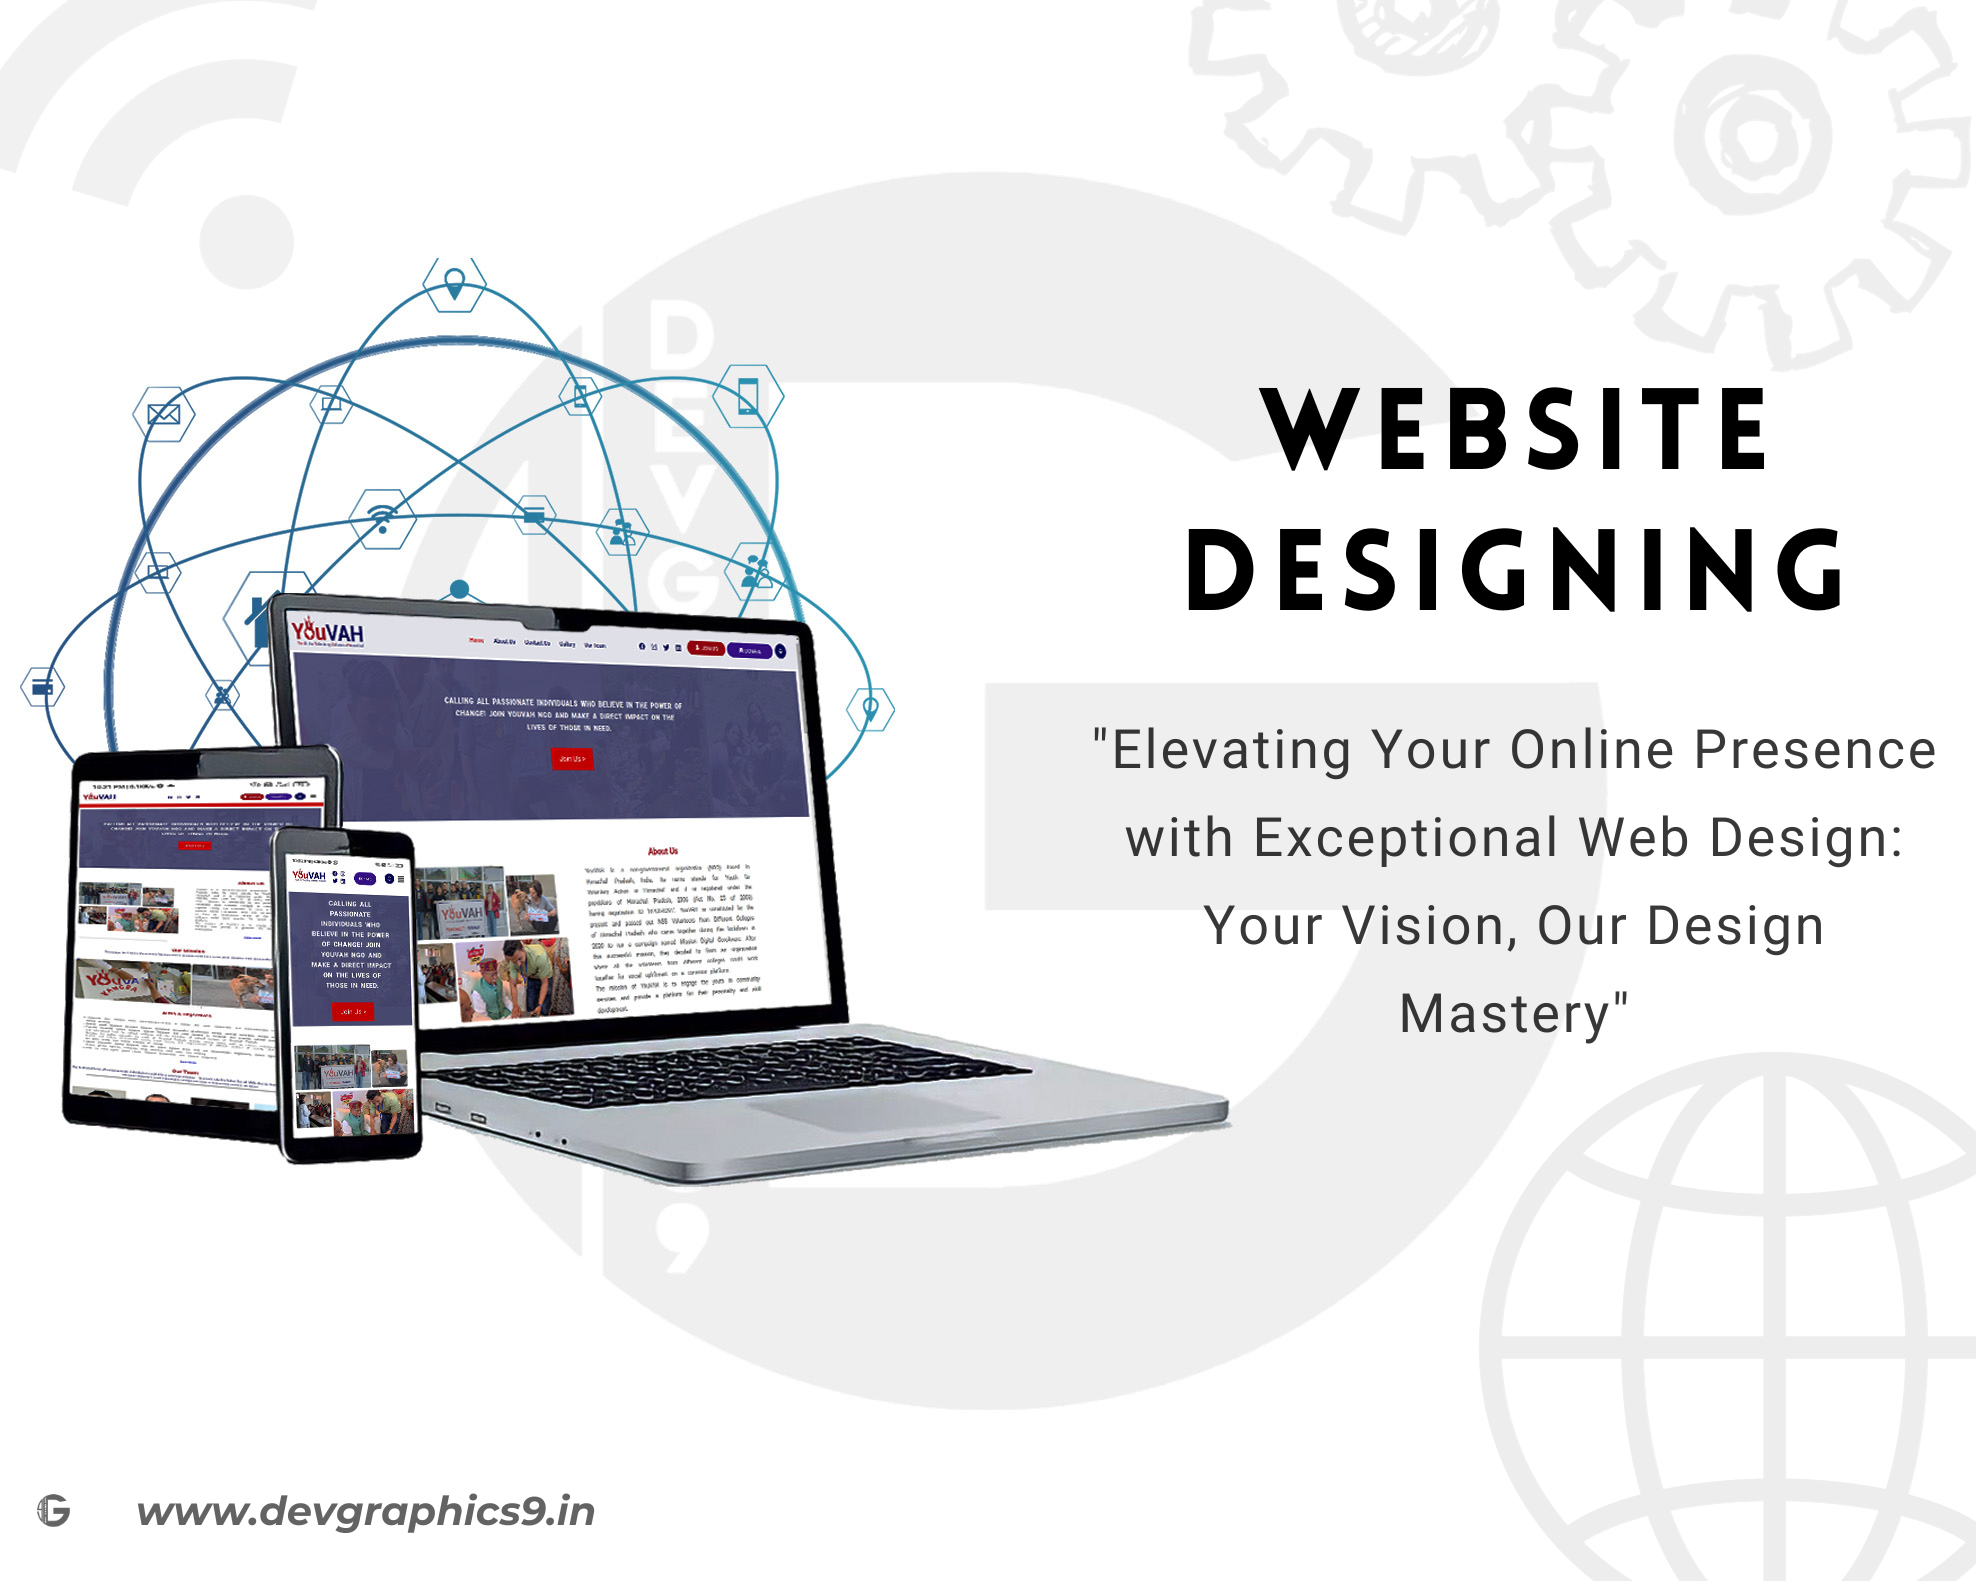 websites designing banner 4